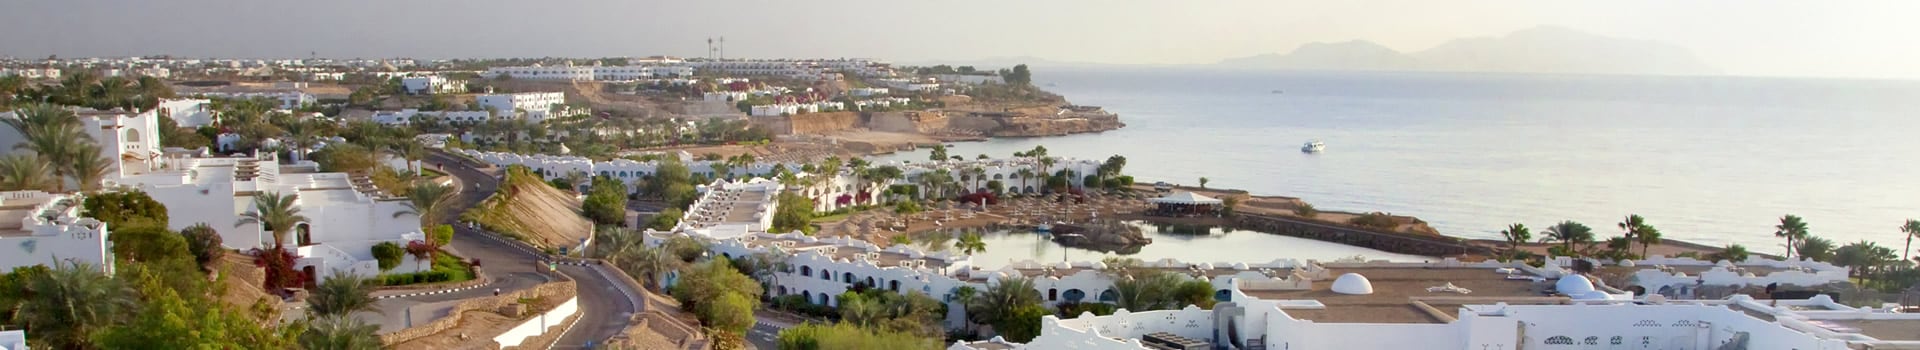 Colonia - Sharm el sheikh